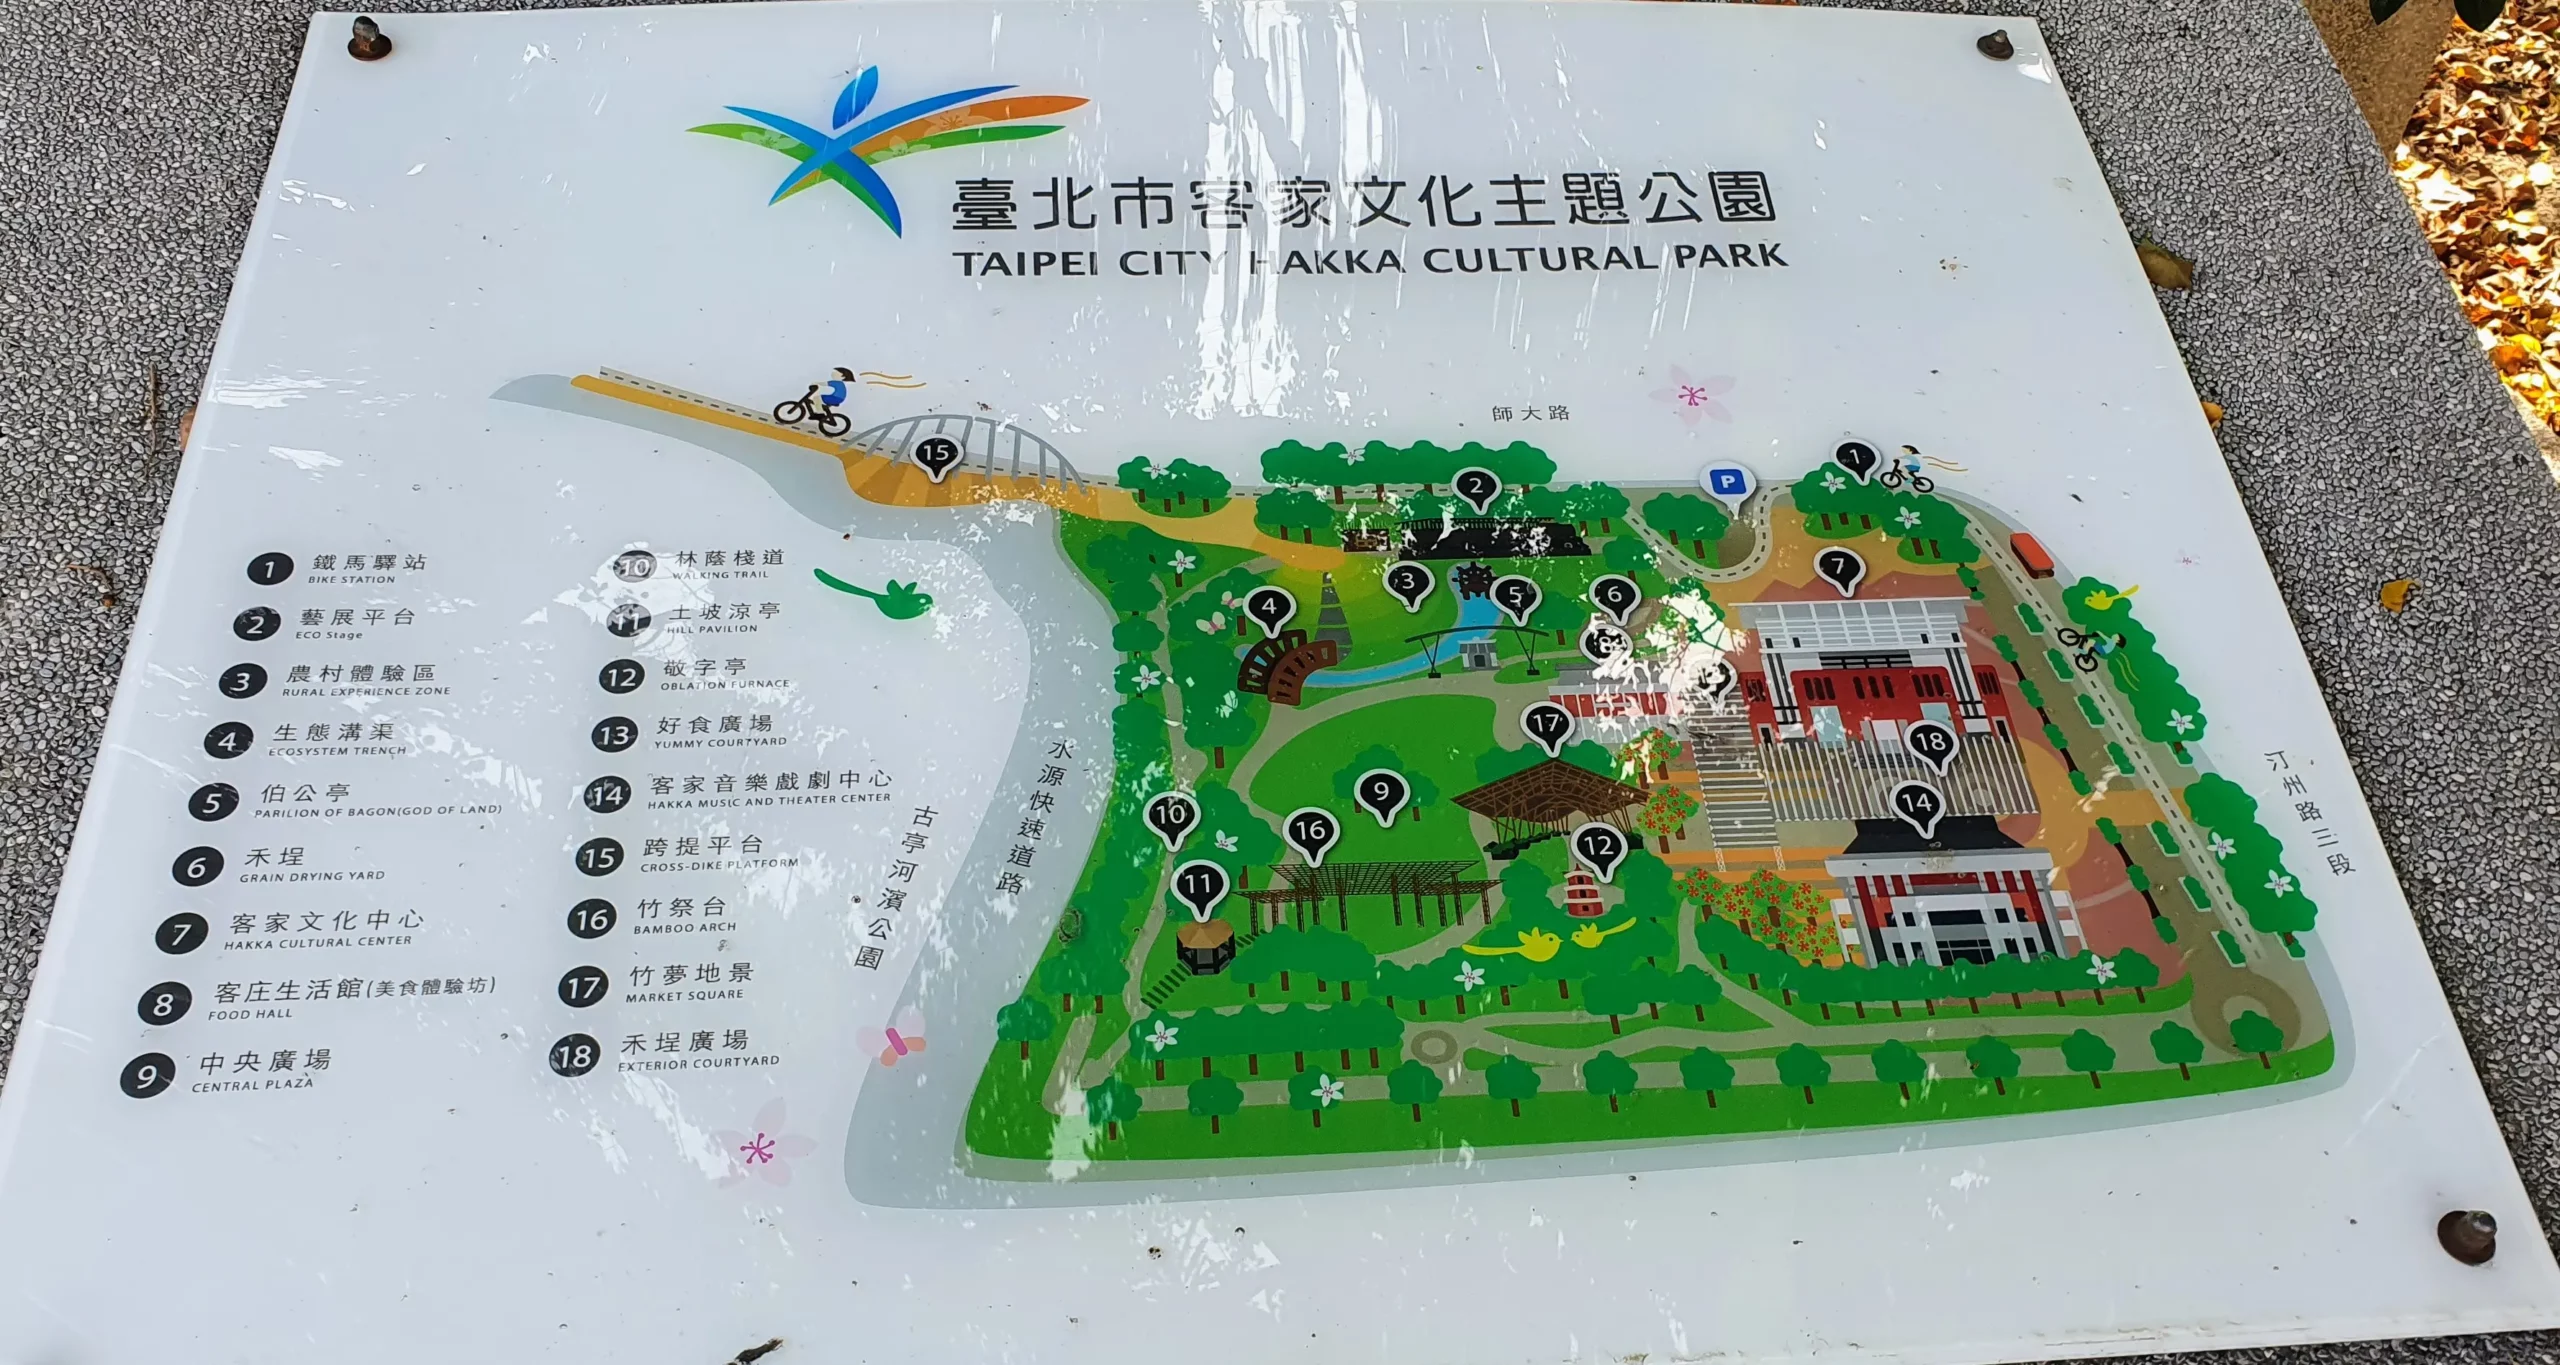 hakka cultural park, Zhongzheng District, Taipei City, Taiwan